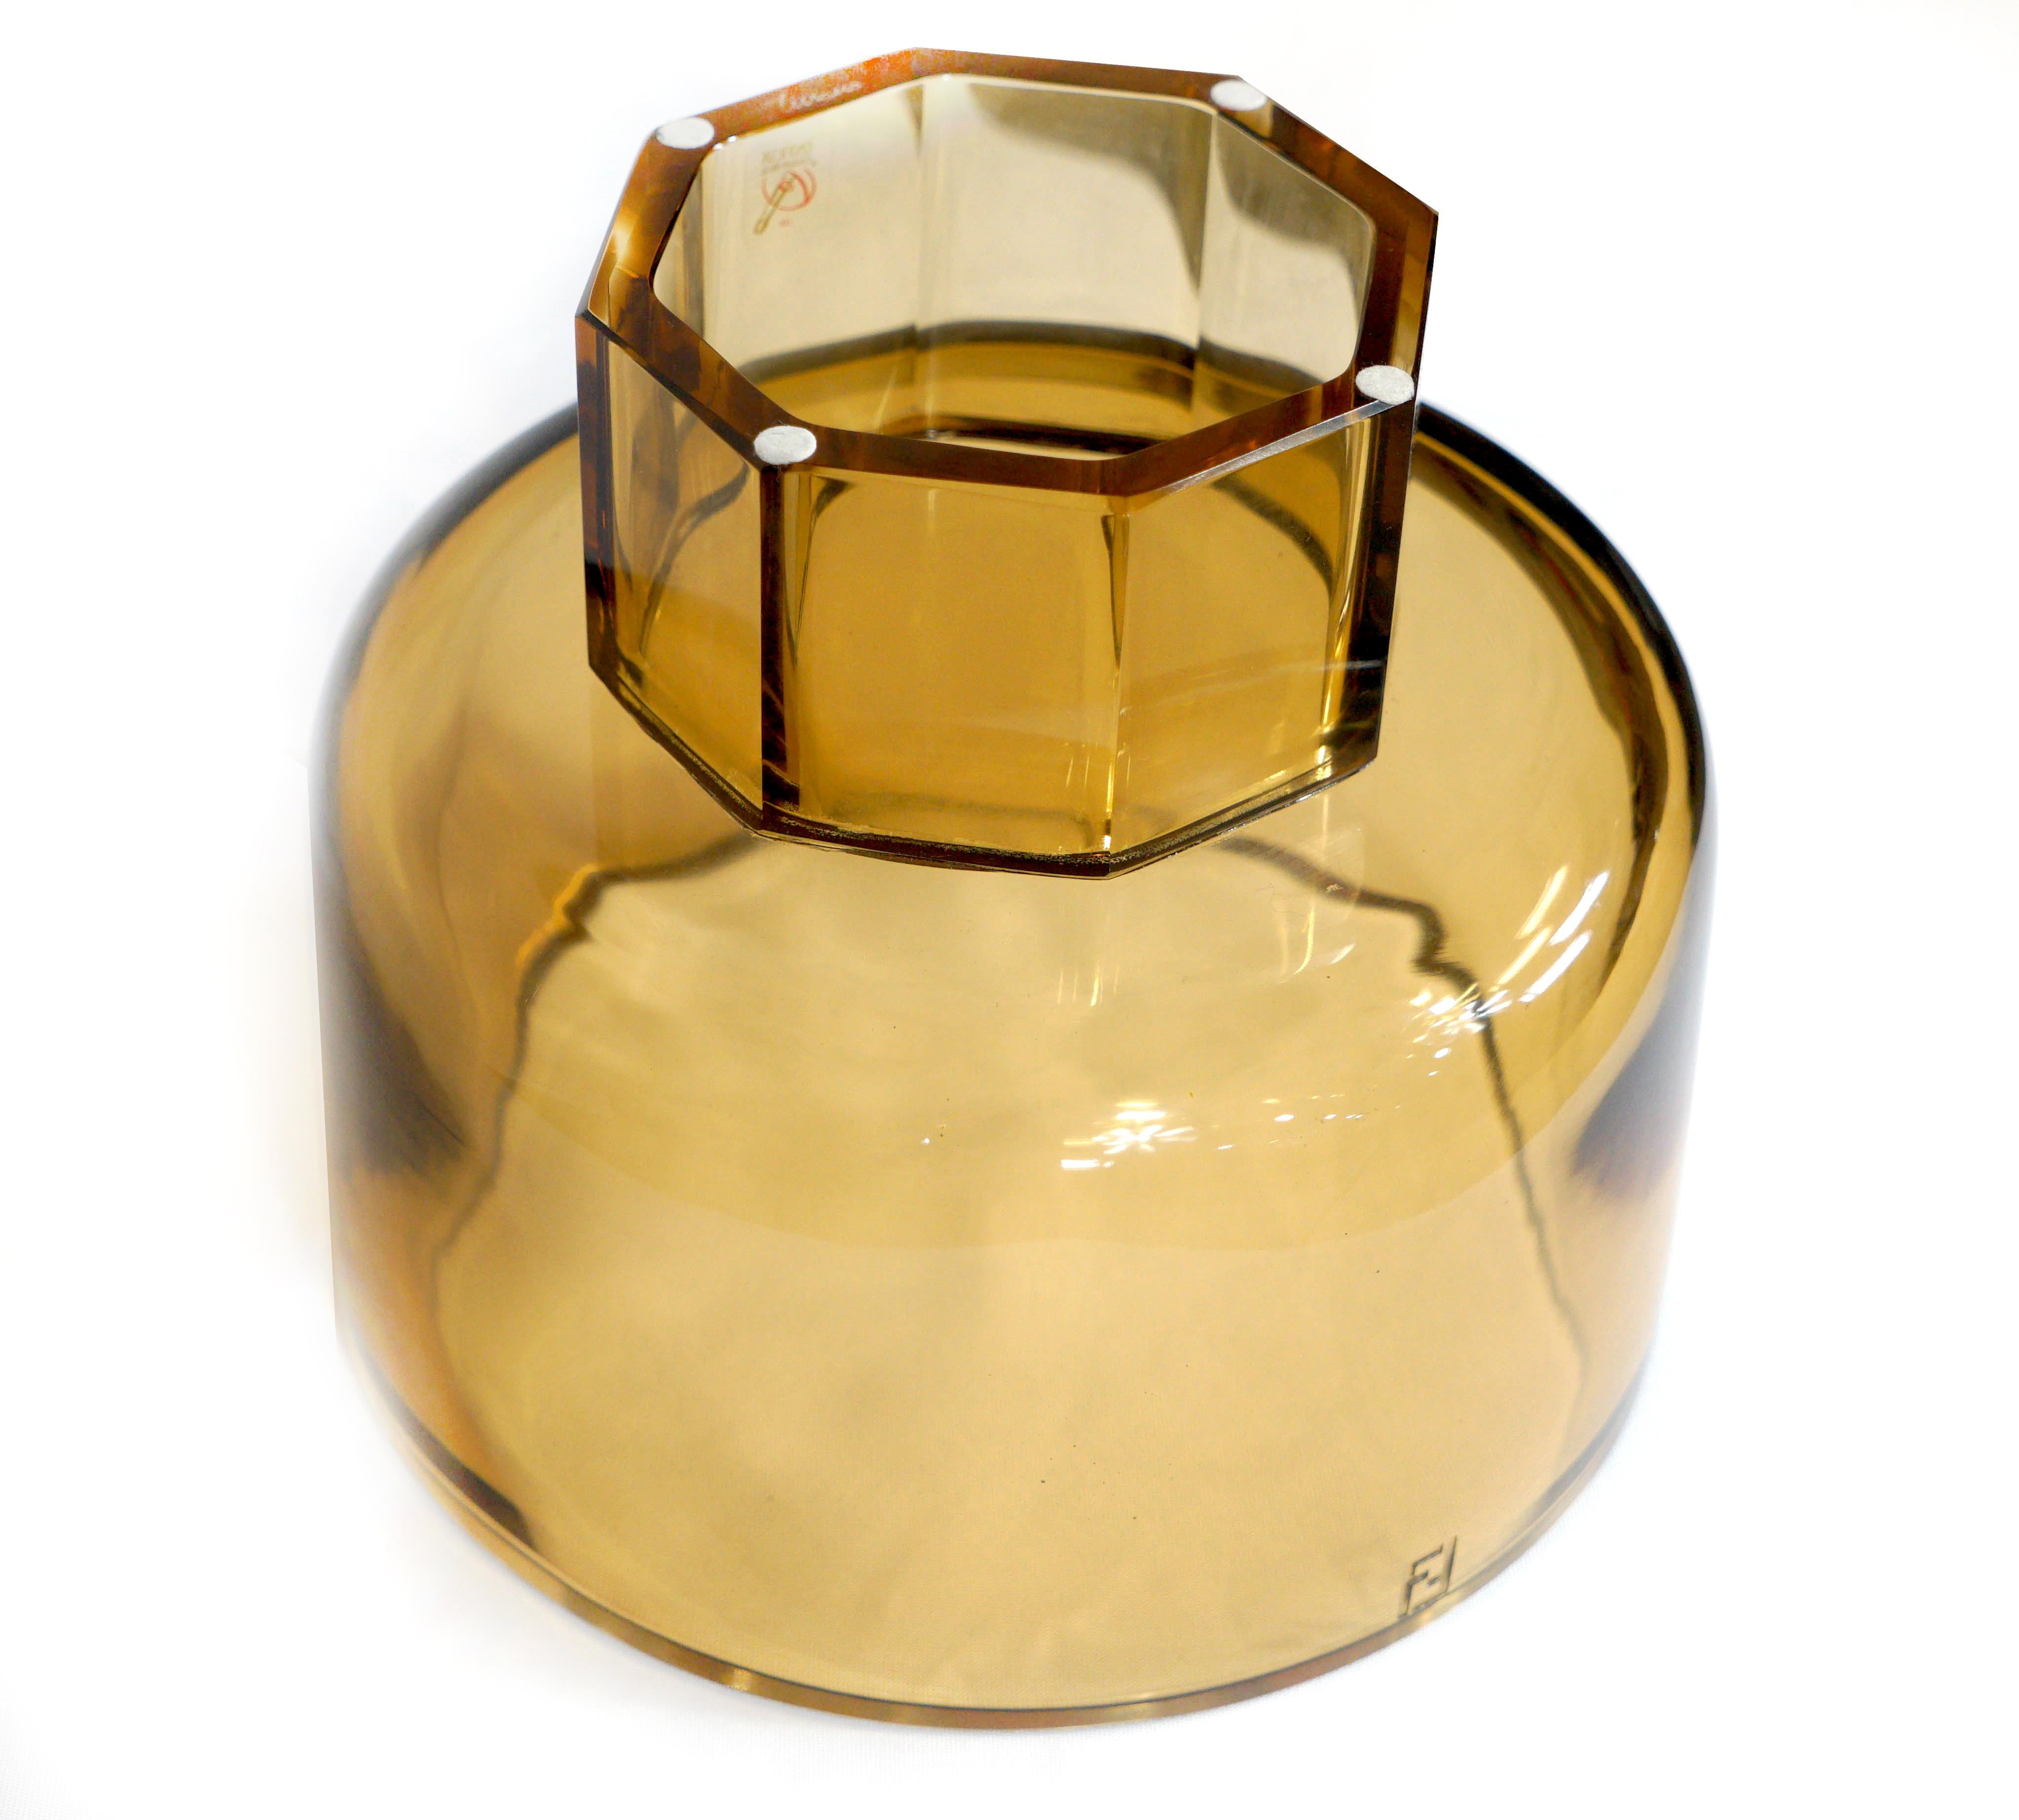 Das mundgeblasene Muranoglas in gelbem Ton eignet sich für Blumenarrangements, gepflanzte Orchideen und mehr. Graviert mit dem klassischen Fendi FF-Logo. Die Helligkeit und die Farben sind auf einen künstlerischen Ansatz zurückzuführen, der Teil des